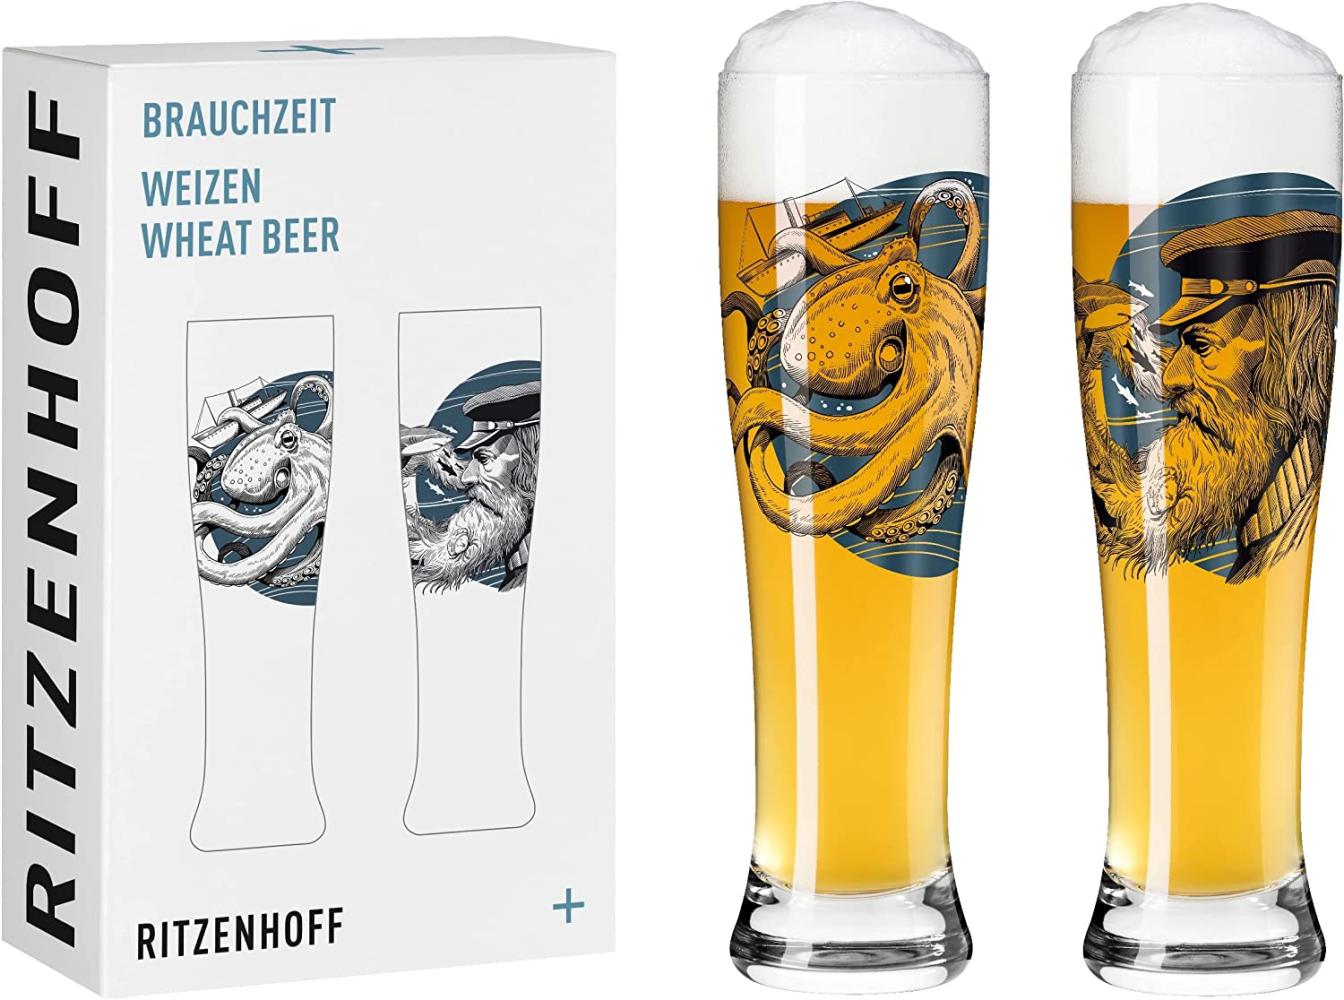 Ritzenhoff Brauchzeit Weizenbierglas 2er Set Krake & Seemann Bild 1